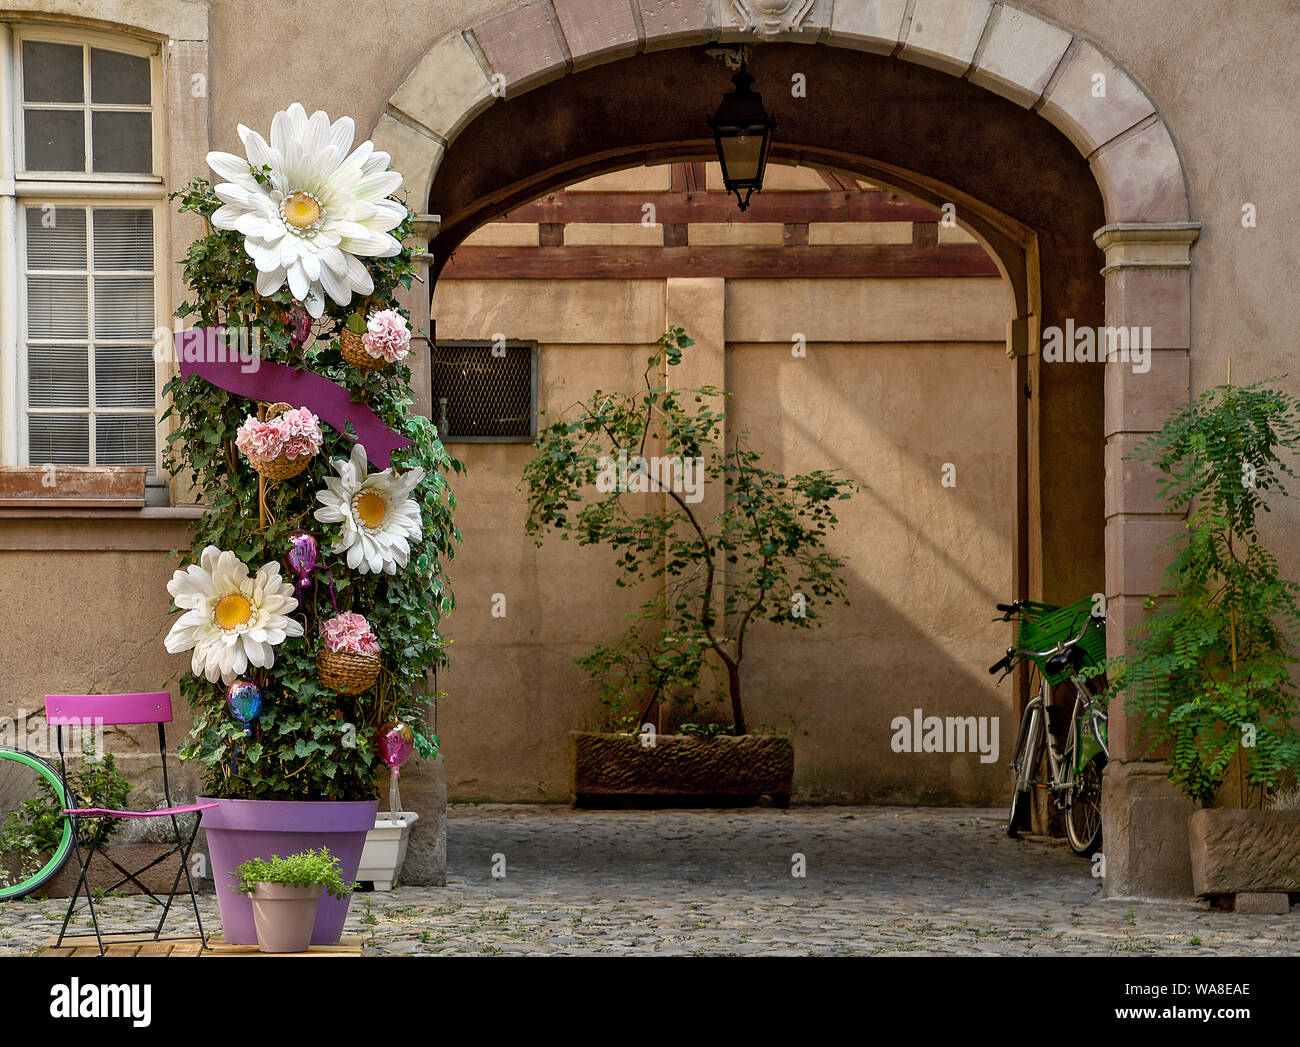 Cortile della casa arch ingresso con daisy piante ornamentali in vaso Foto Stock